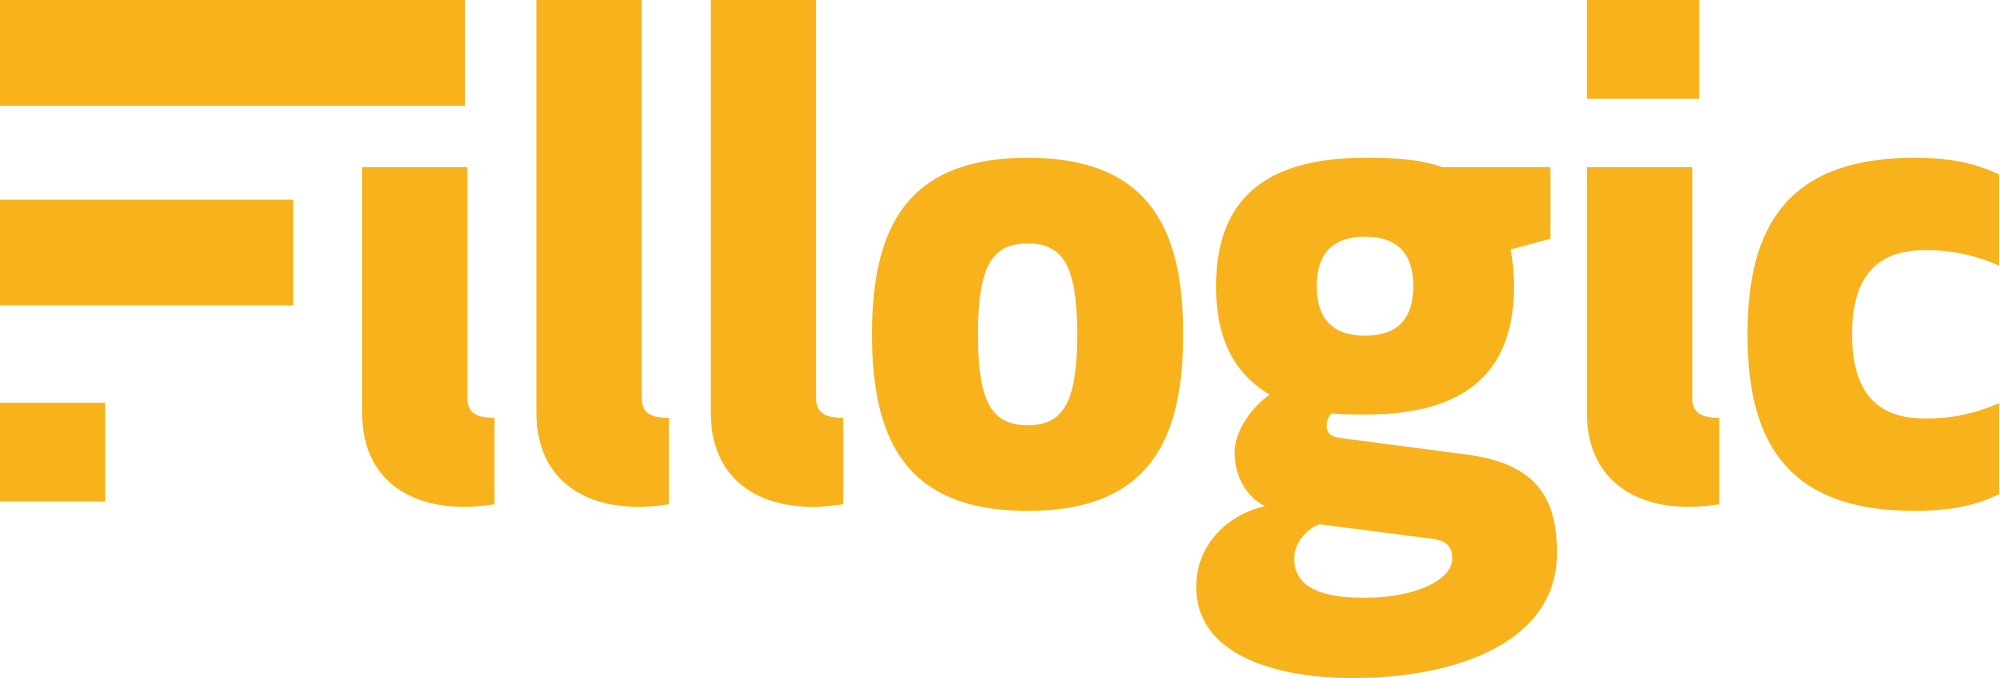 fillogic-logo-orange (1).png